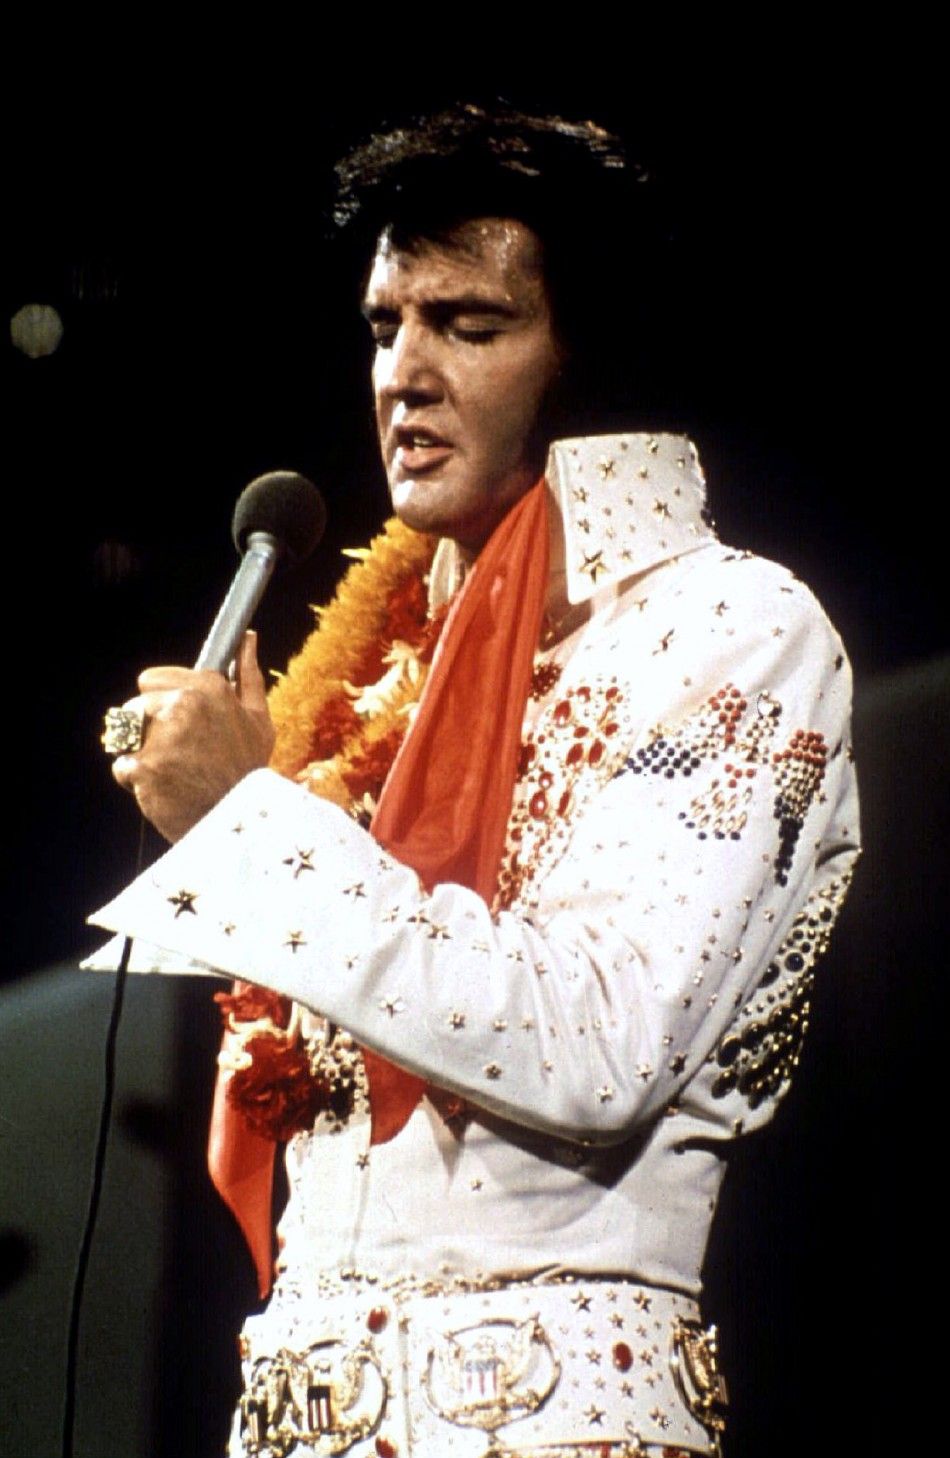 2. Elvis Presley